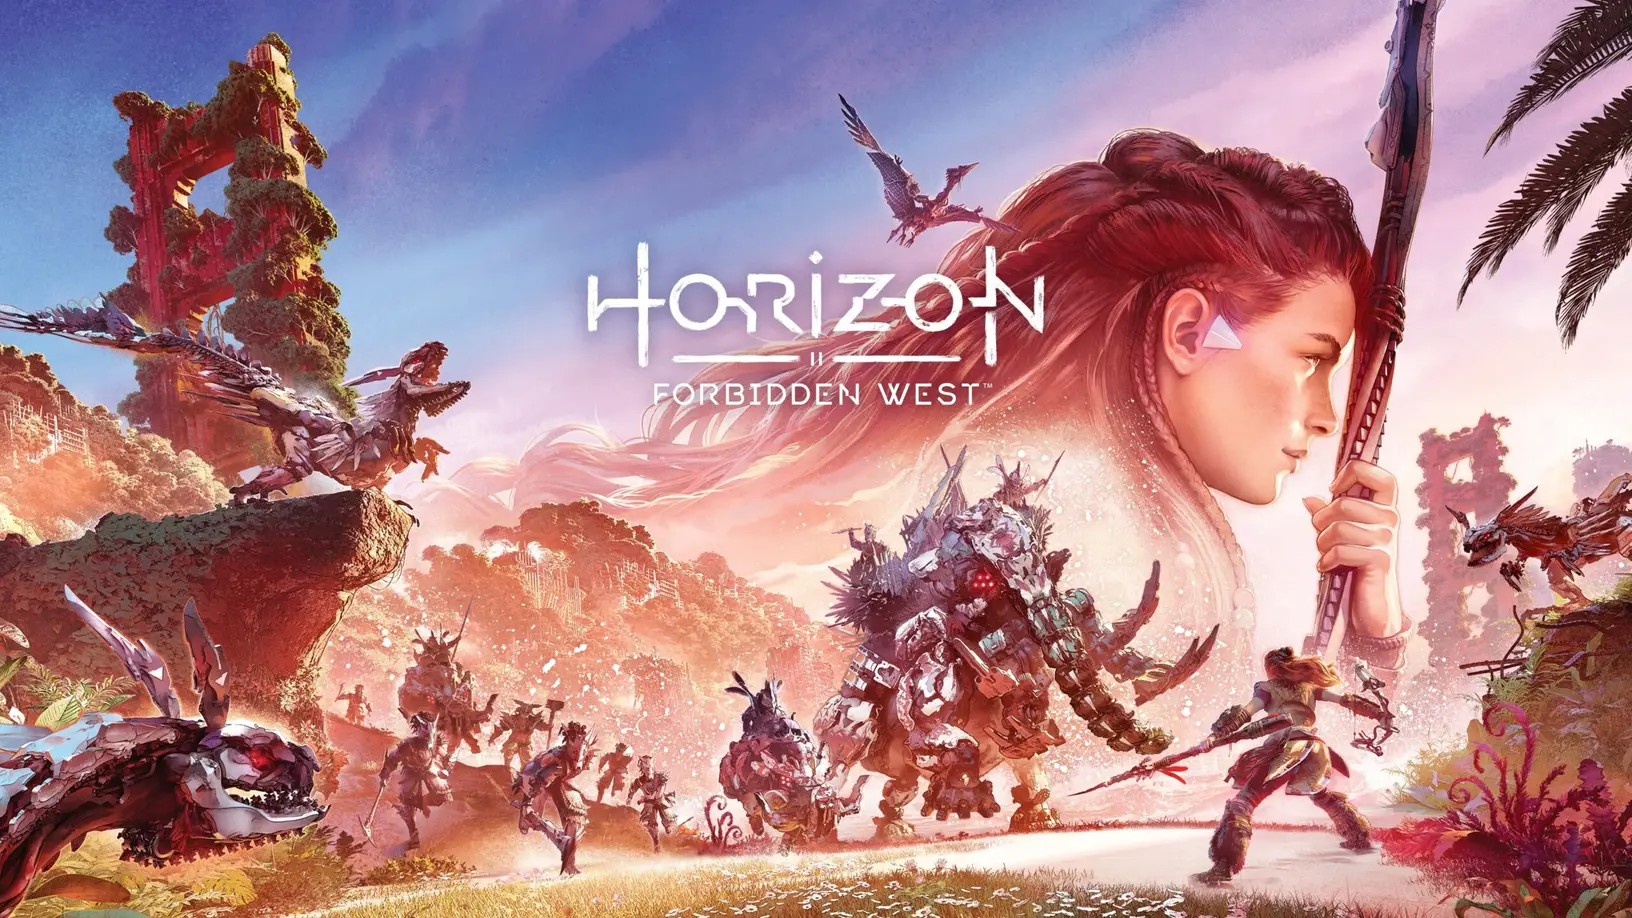  Sony PlayStation  ยืนยัน! Horizon Forbidden West จะมีซับไตเติลภาษาไทยอย่างเป็นทางการ และมีชื่อภาษาไทยอย่างเป็นทางการ คือ “ผจญภัยสุดเขตแดนต้องห้าม” 